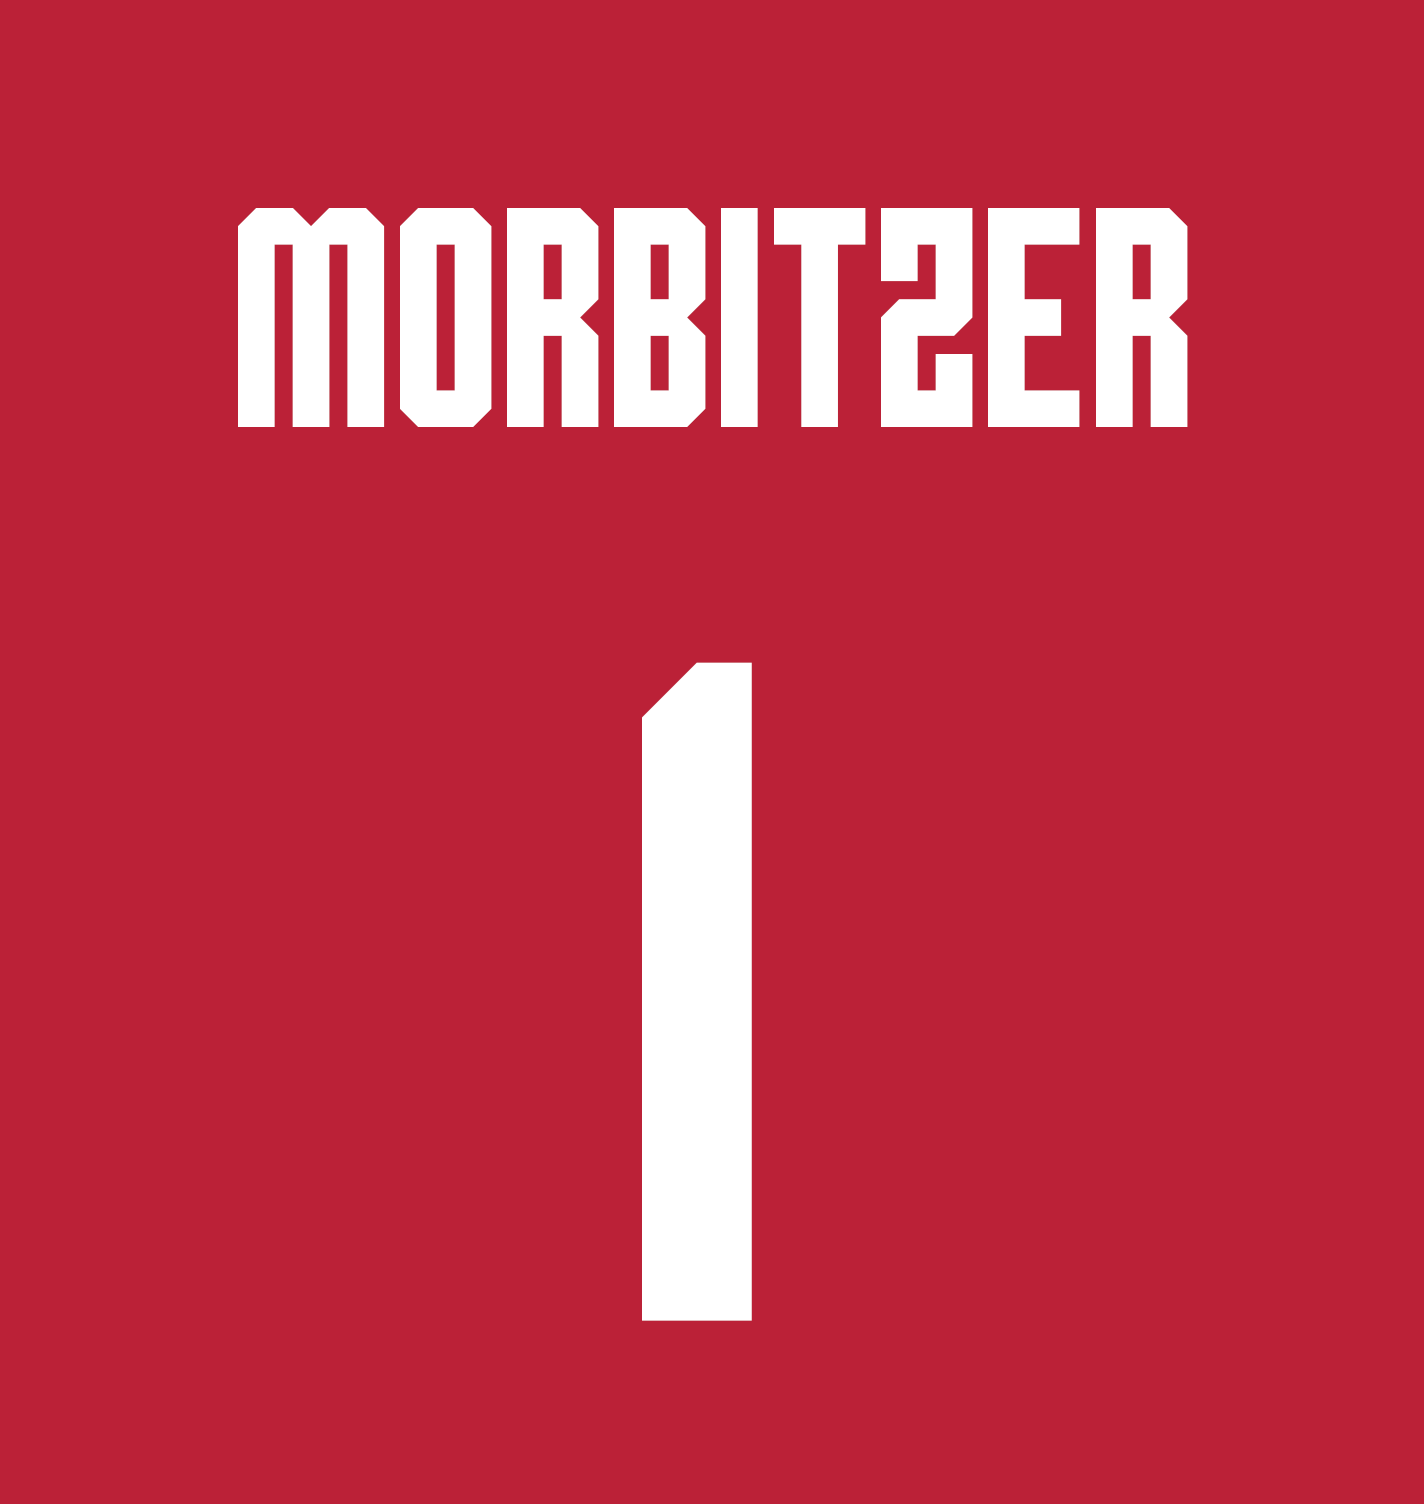 Sarah Morbitzer | #1